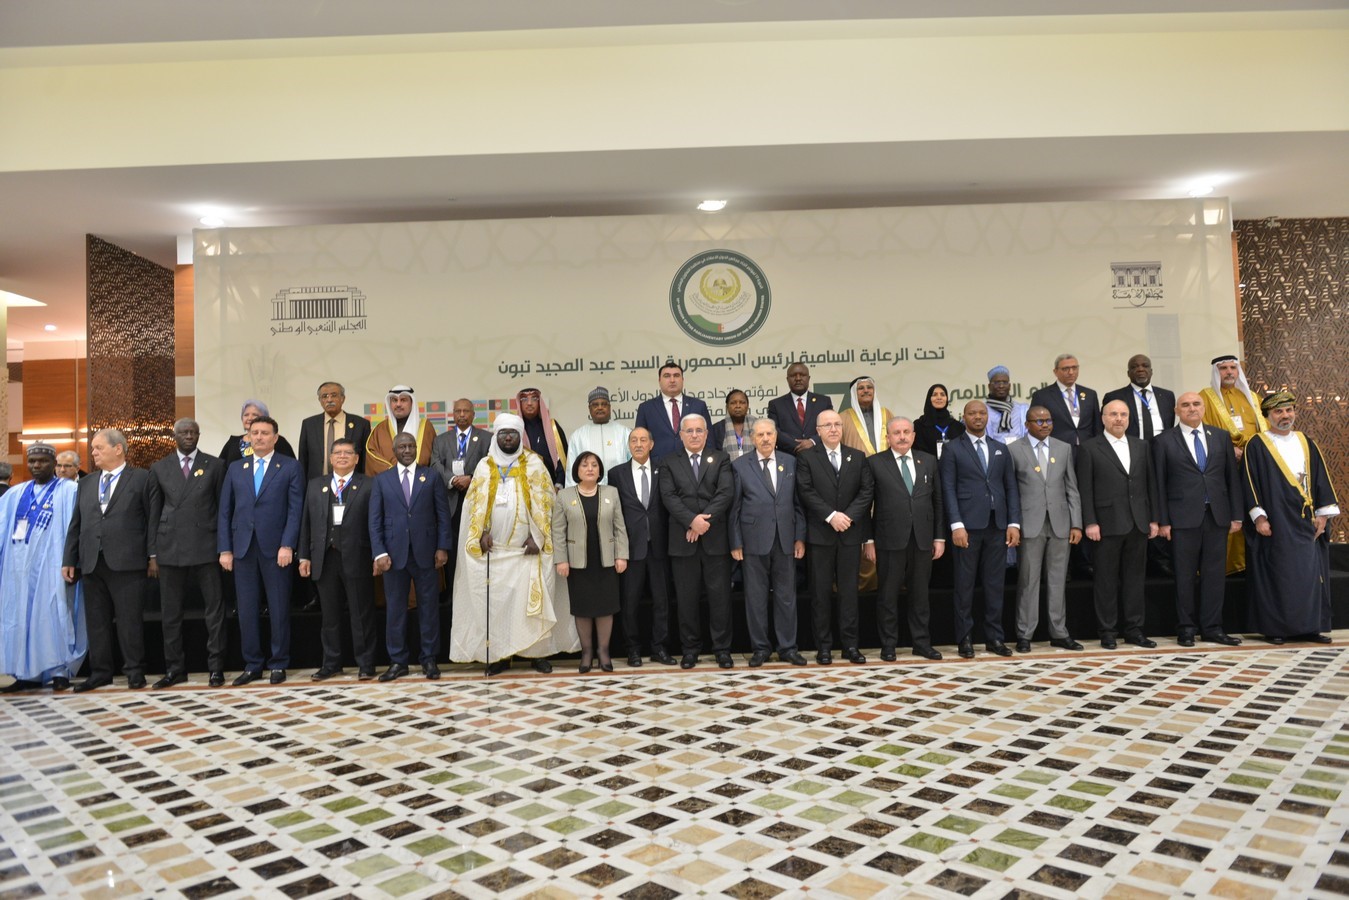 اتحاد مجالس الدول الأعضاء في منظمة التعاون الاسلامي يشيد بالانعكاسات الإيجابية لكاس العالم 2022